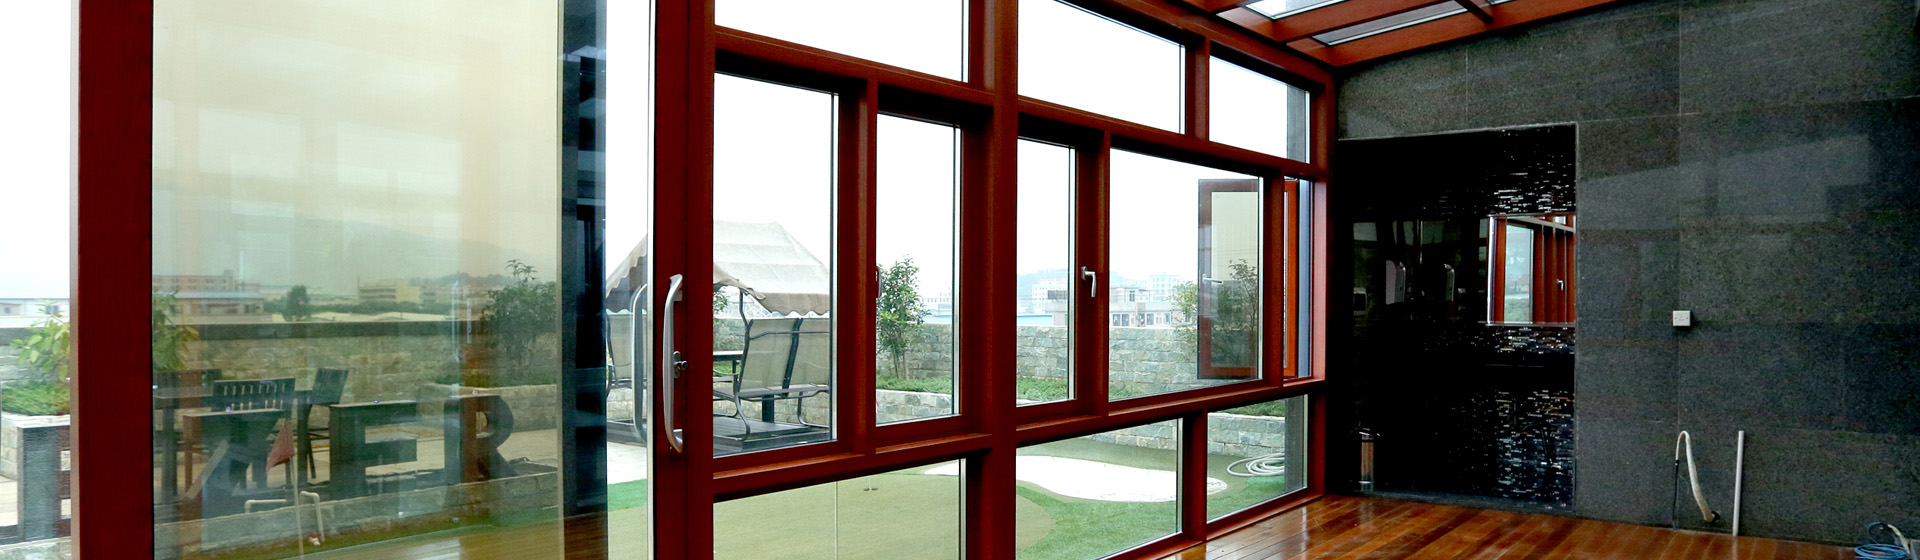 大自然隐形纱窗有限公司 专业从事隐藏型纱门窗、隐形防护网、阳台窗等产品研发、制作、批发销售的企业。  - 门窗类系列